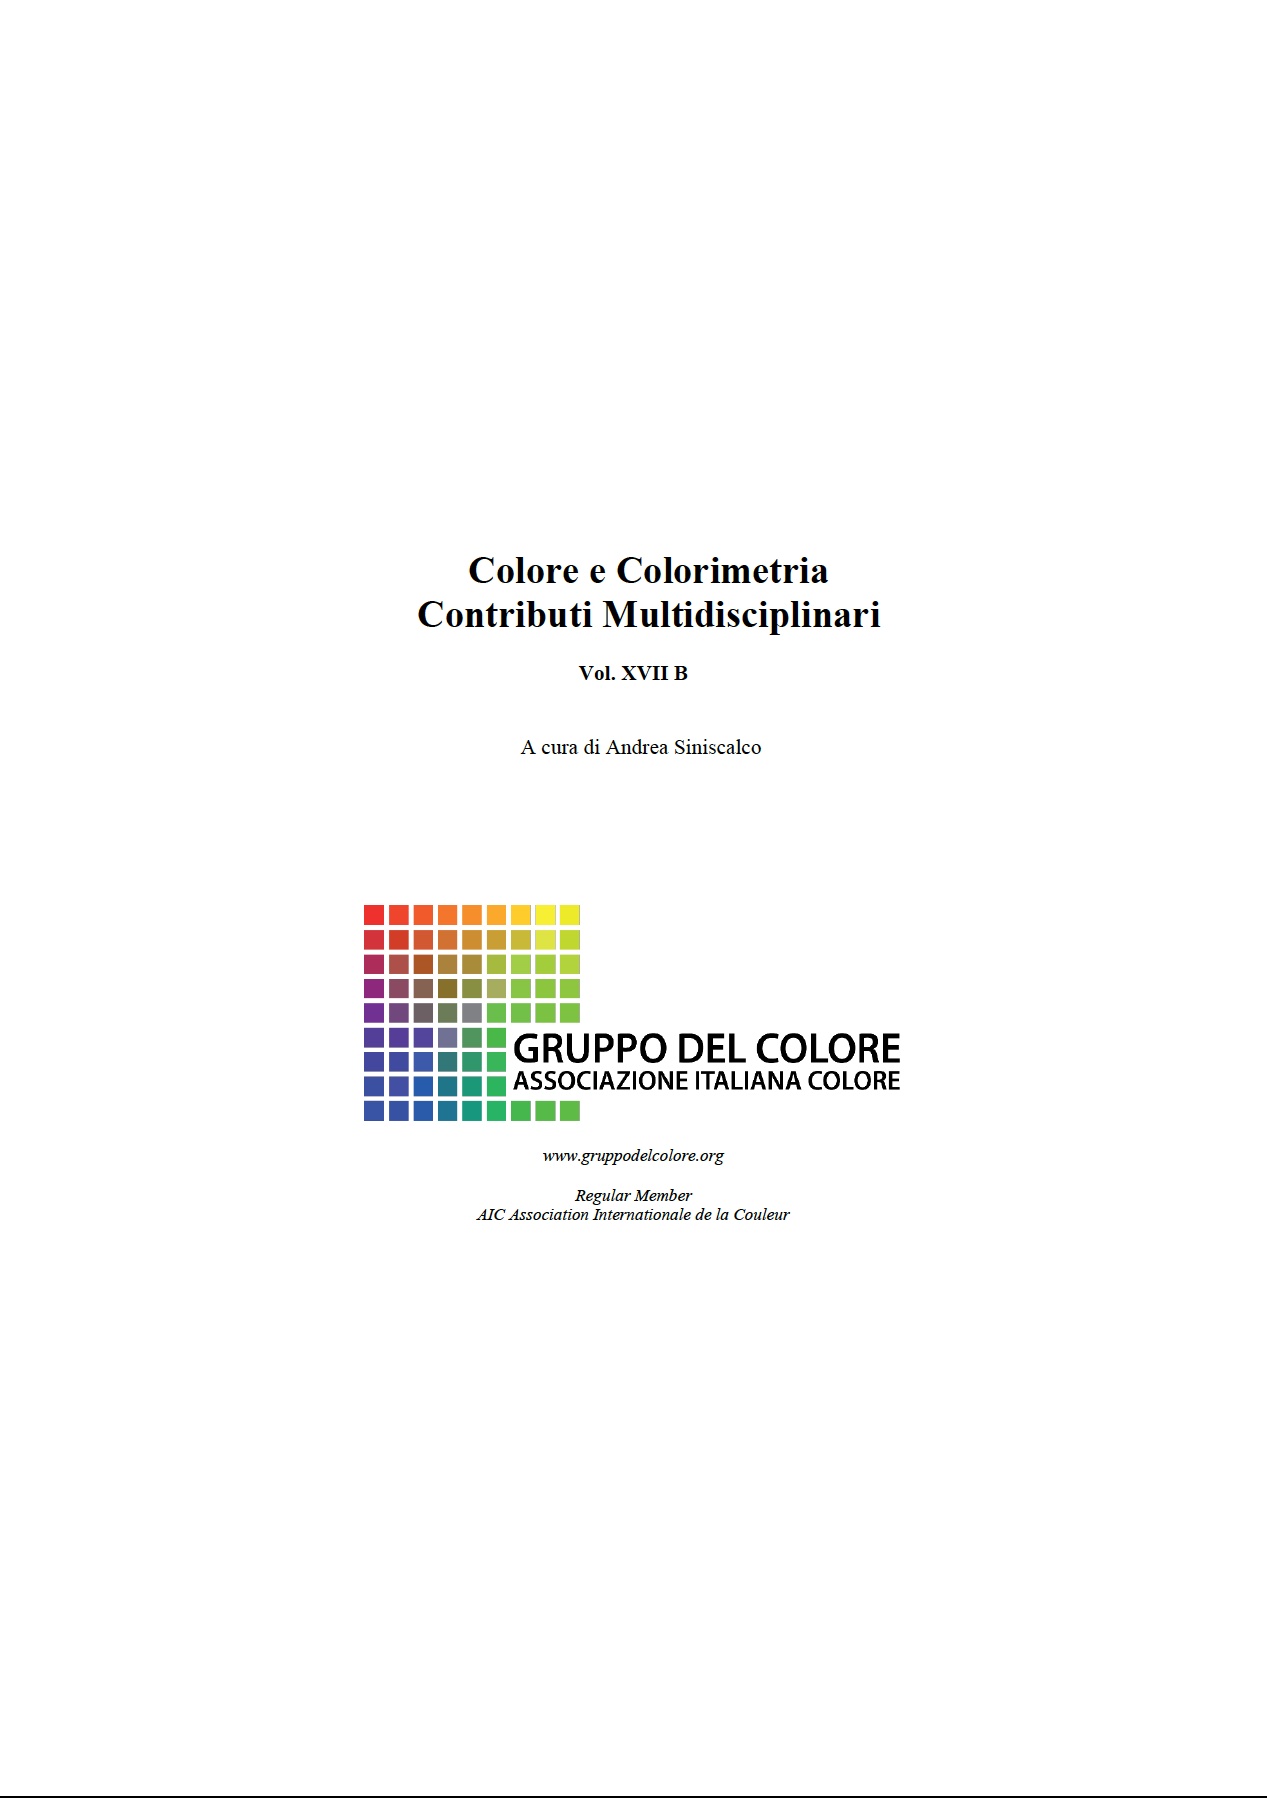 SINISCALCO Andrea (Ed.) 2022. Colore e Colorimetria: Contributi Multidisciplinari. Vol 17B